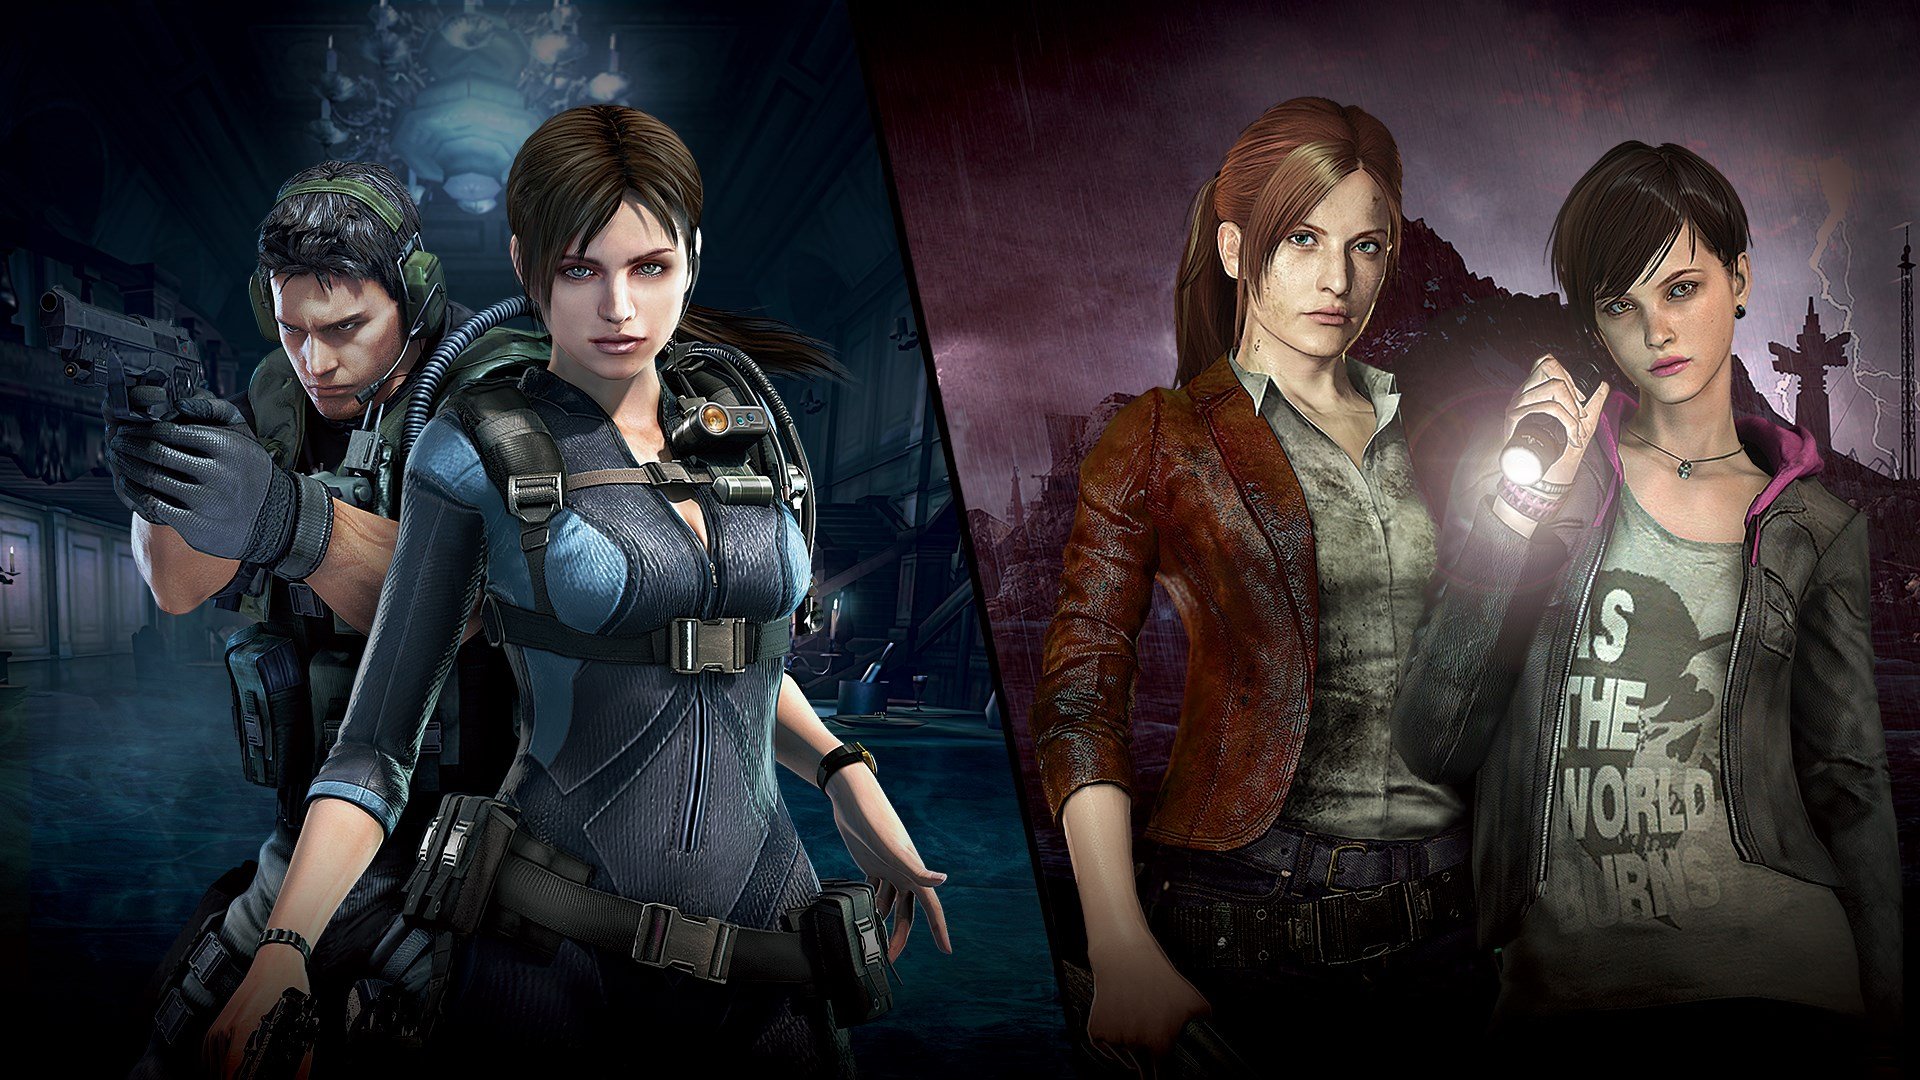 Crítica] Resident Evil 2 - Traindo sua nostalgia!